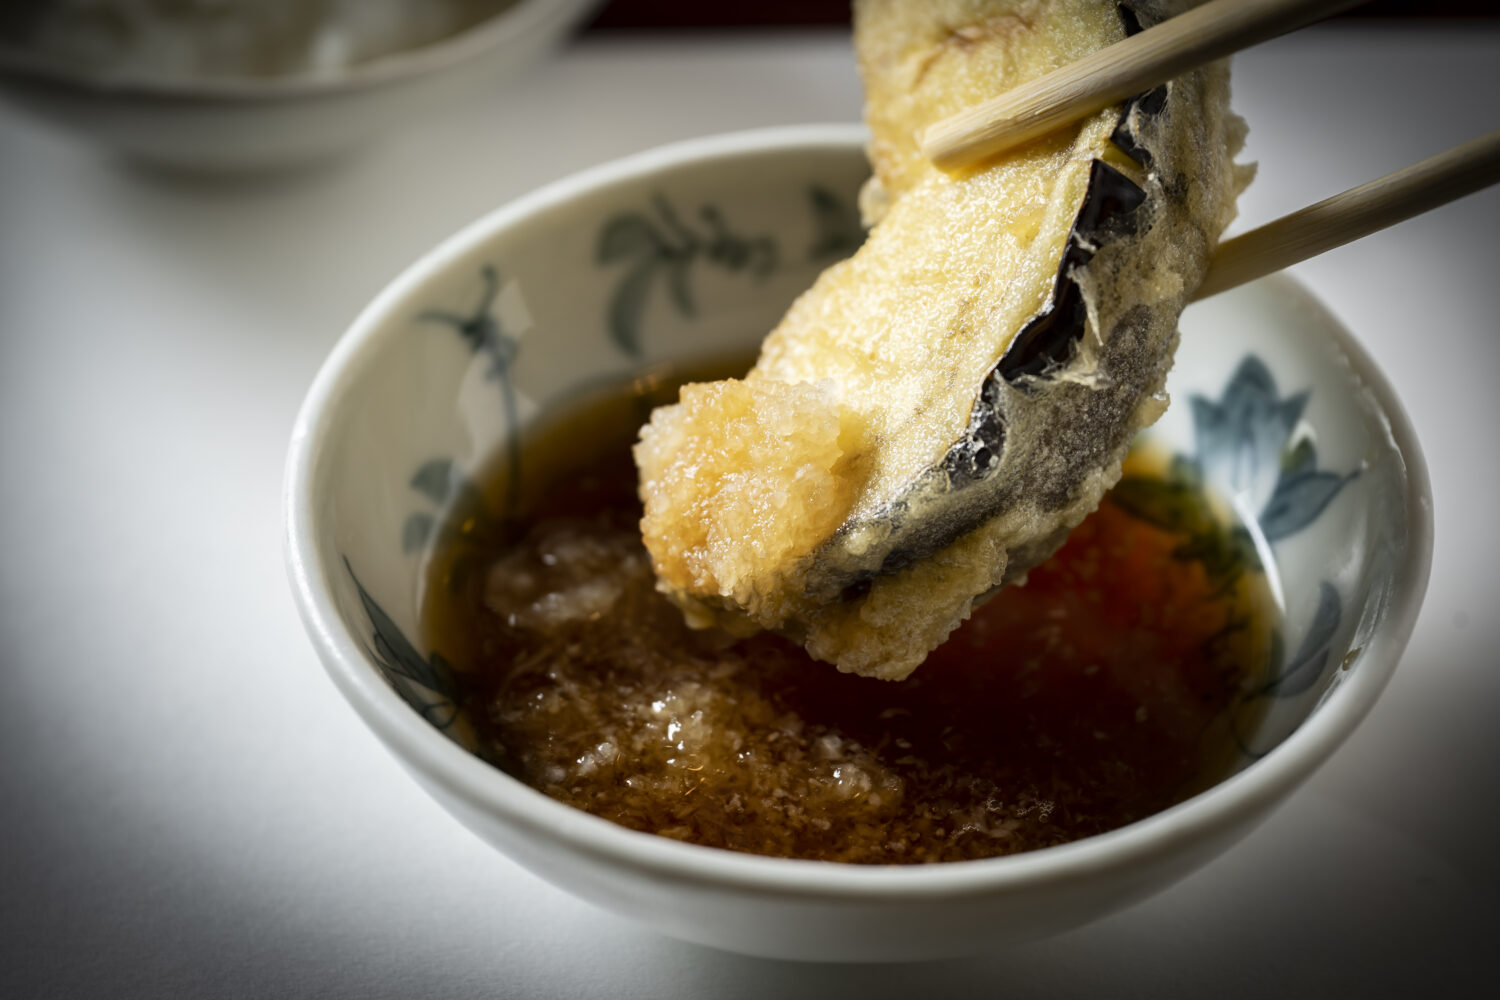 ナスは天つゆで。おろしを天つゆに浸し、天ぷらでおろしをすくうようにしていただきます